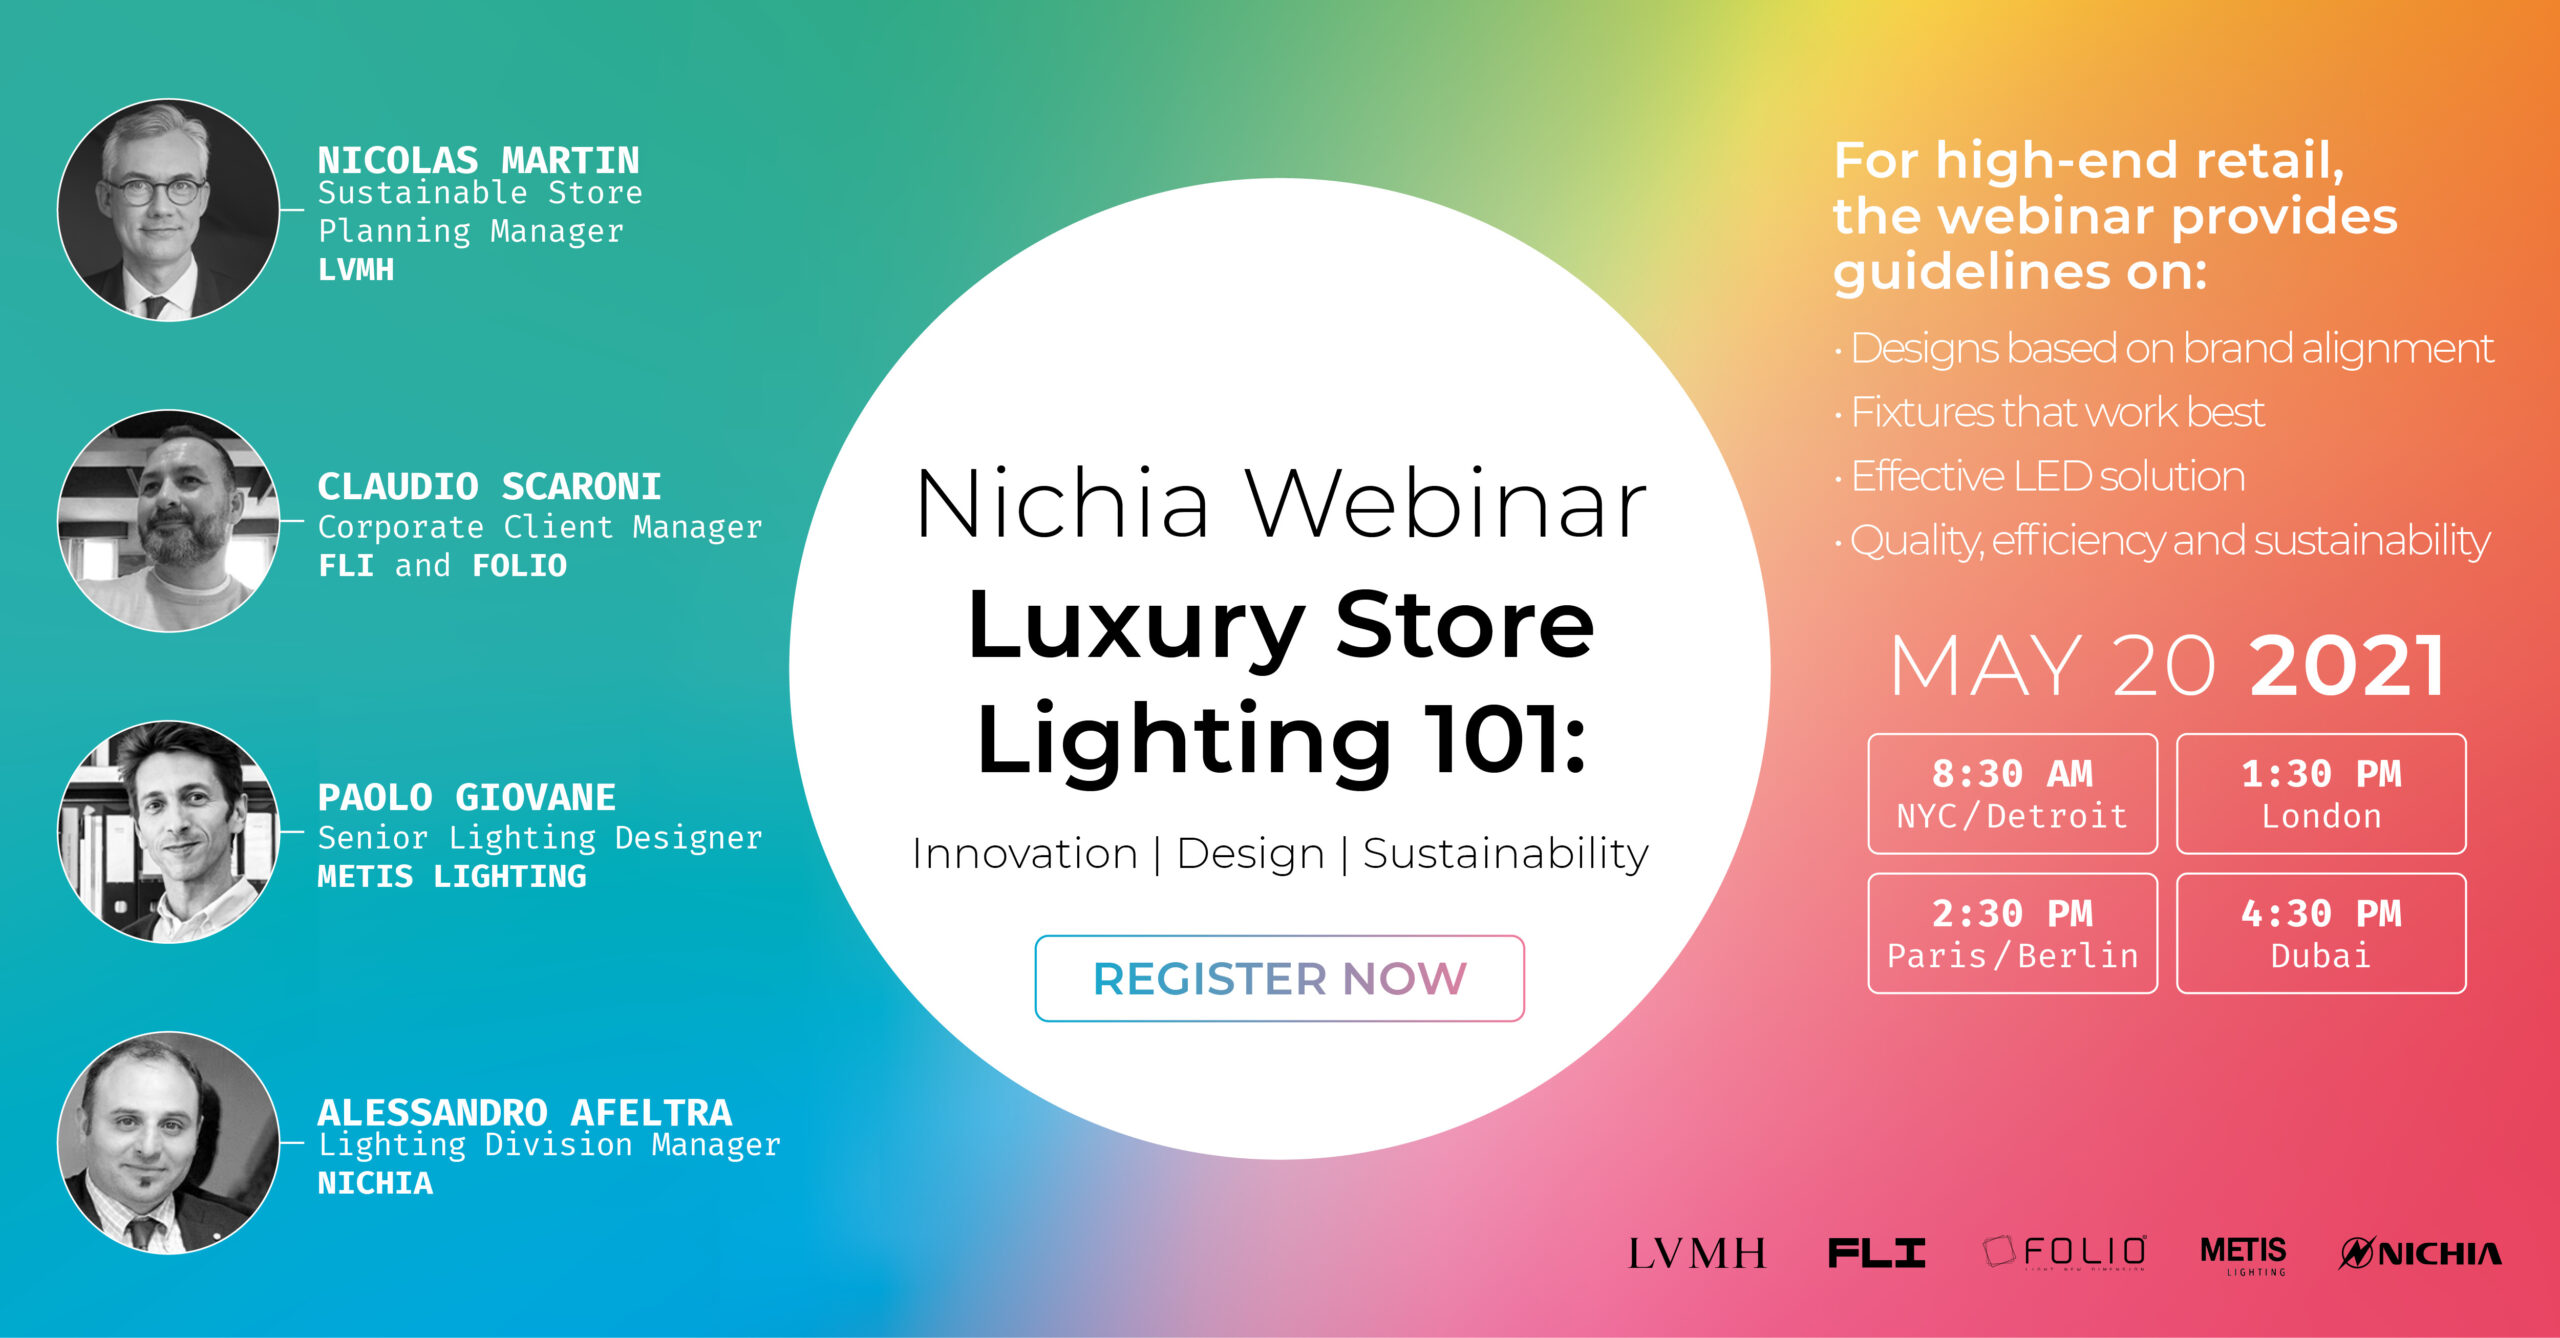 Nichia Webinar Luxury Store Lighting